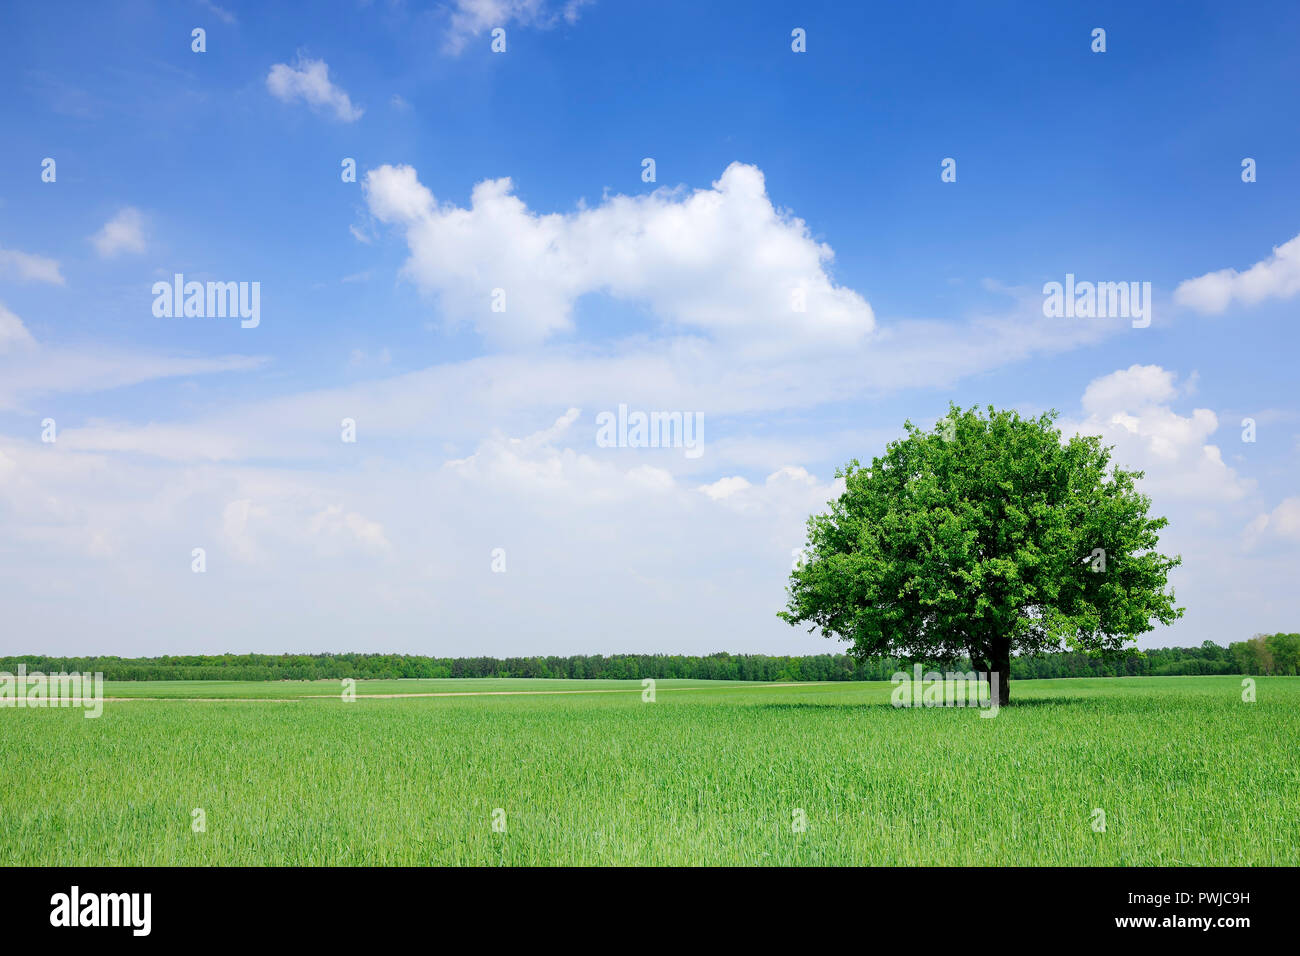 Paisaje, solitario árbol entre campos verdes, el cielo azul y las nubes blancas en el fondo Foto de stock